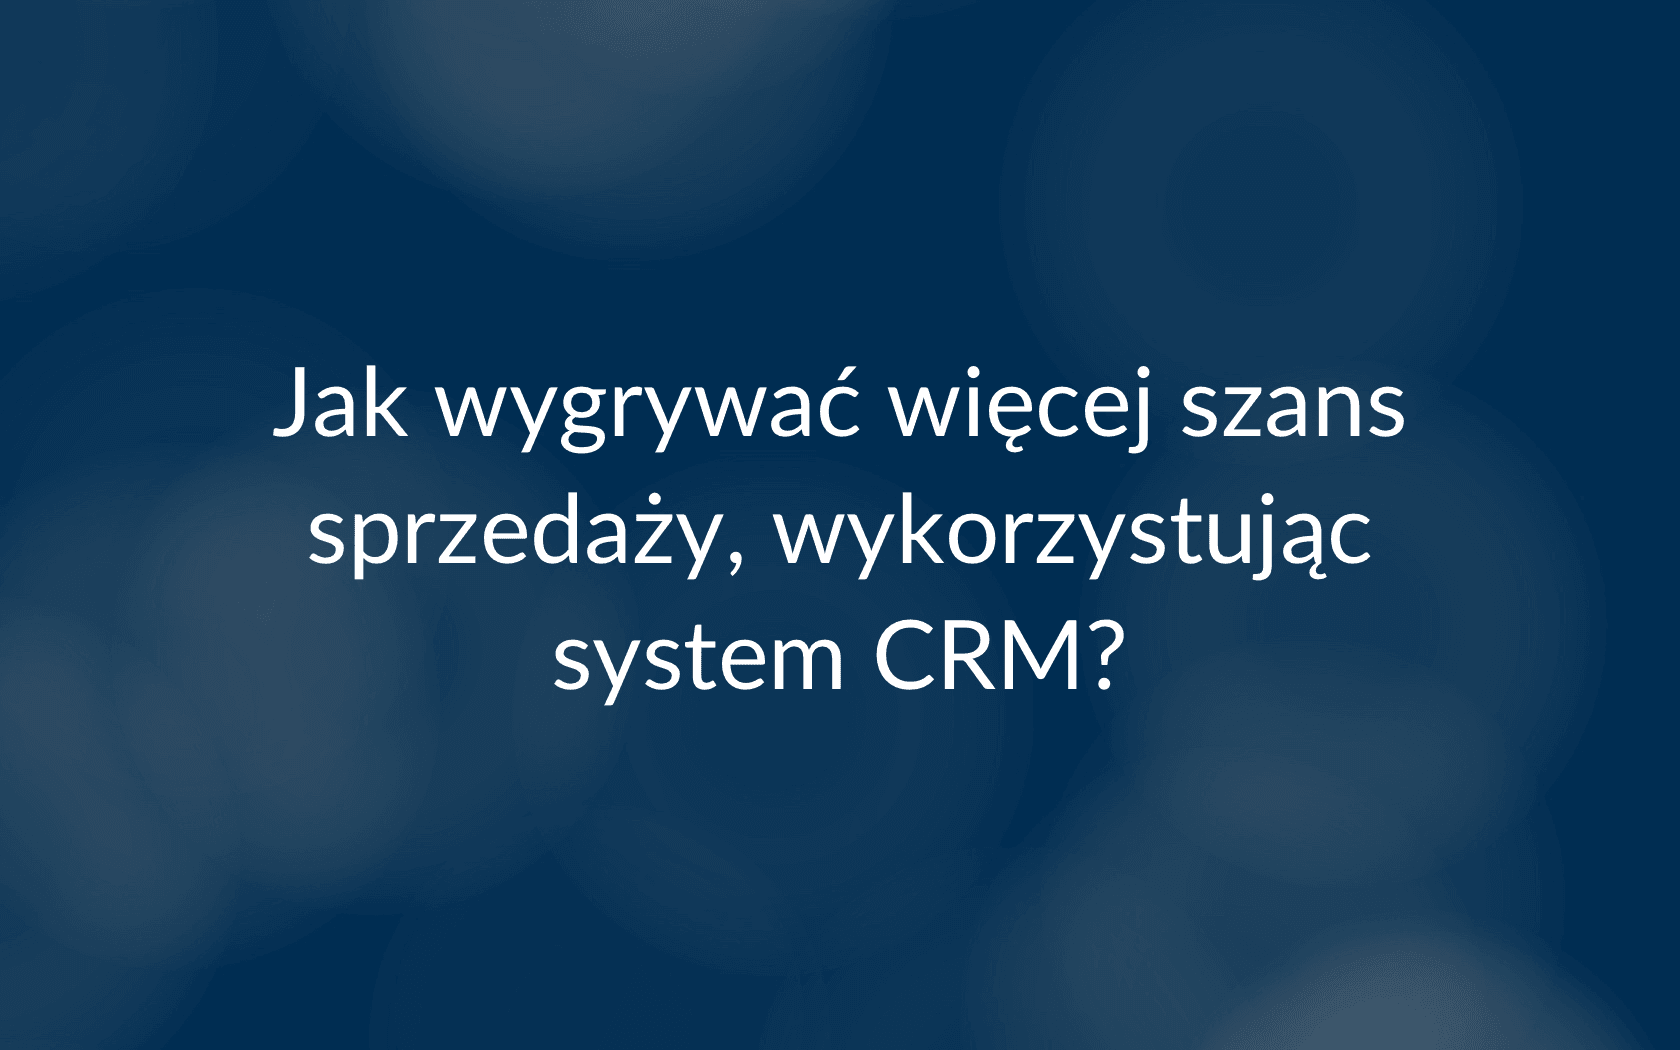 Proces sprzedaży projektowej w systemie CRM - QuckCRM